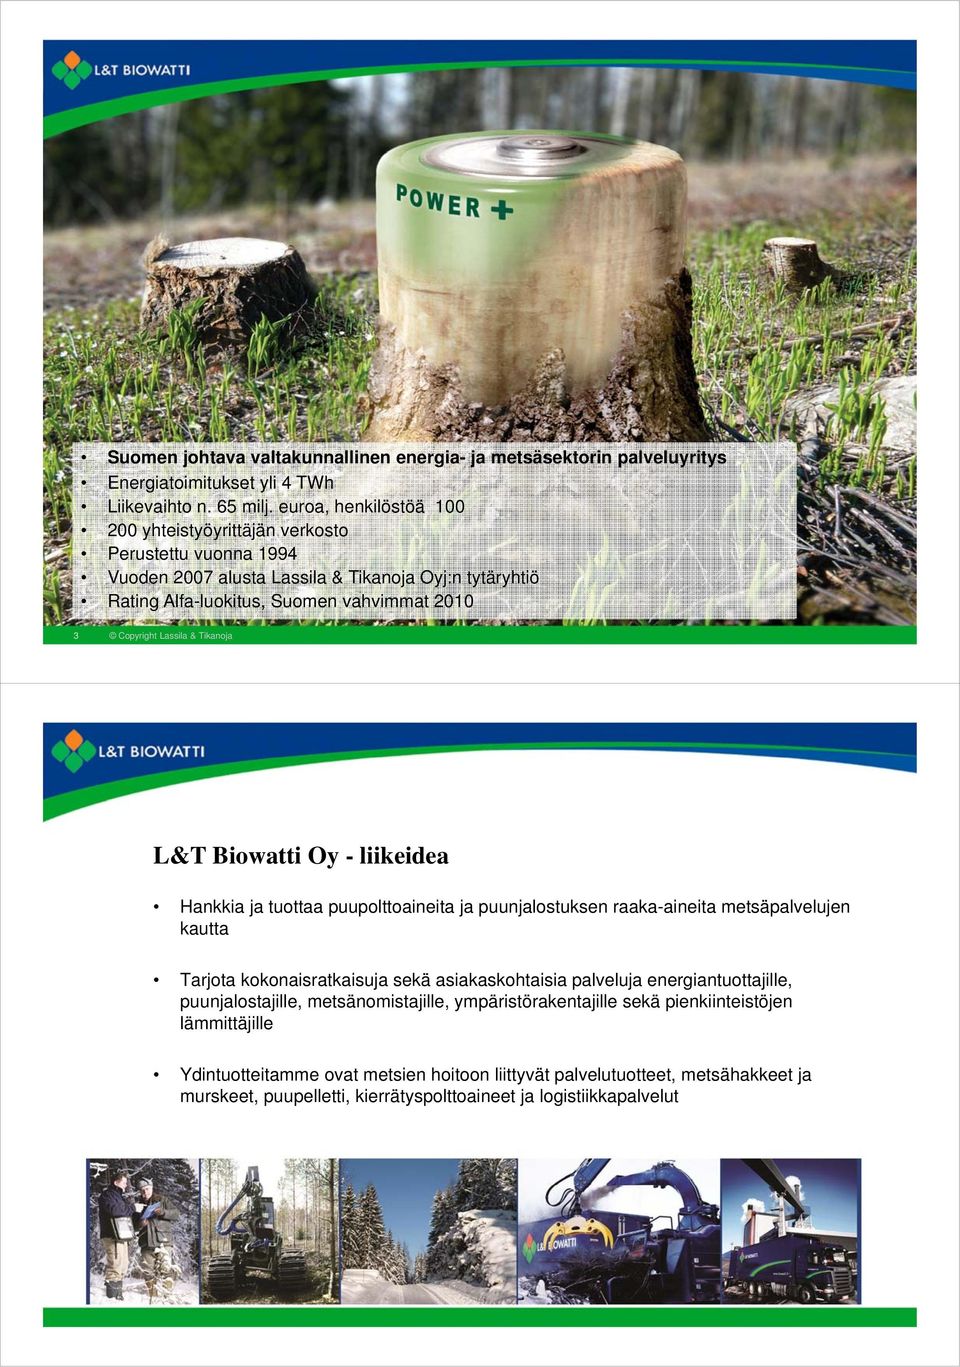 Lassila & Tikanoja L&T Biowatti Oy - liikeidea Hankkia ja tuottaa puupolttoaineita ja puunjalostuksen raaka-aineita metsäpalvelujen kautta Tarjota kokonaisratkaisuja sekä asiakaskohtaisia